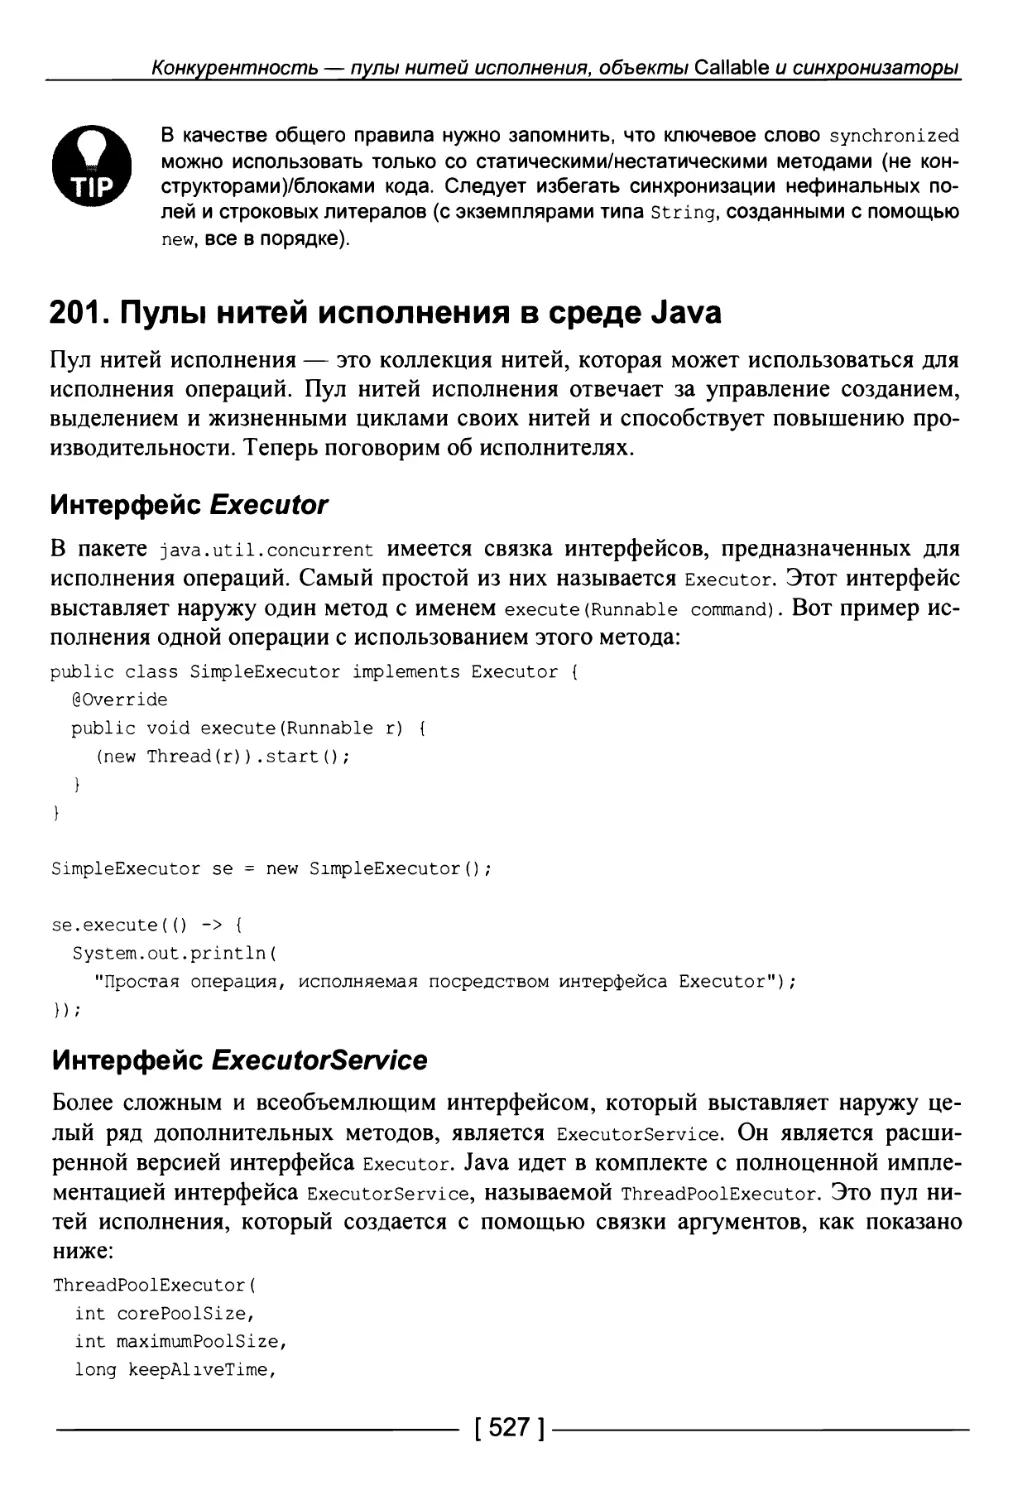 201. Пулы нитей исполнения в среде Java
Интерфейс ExecutorService